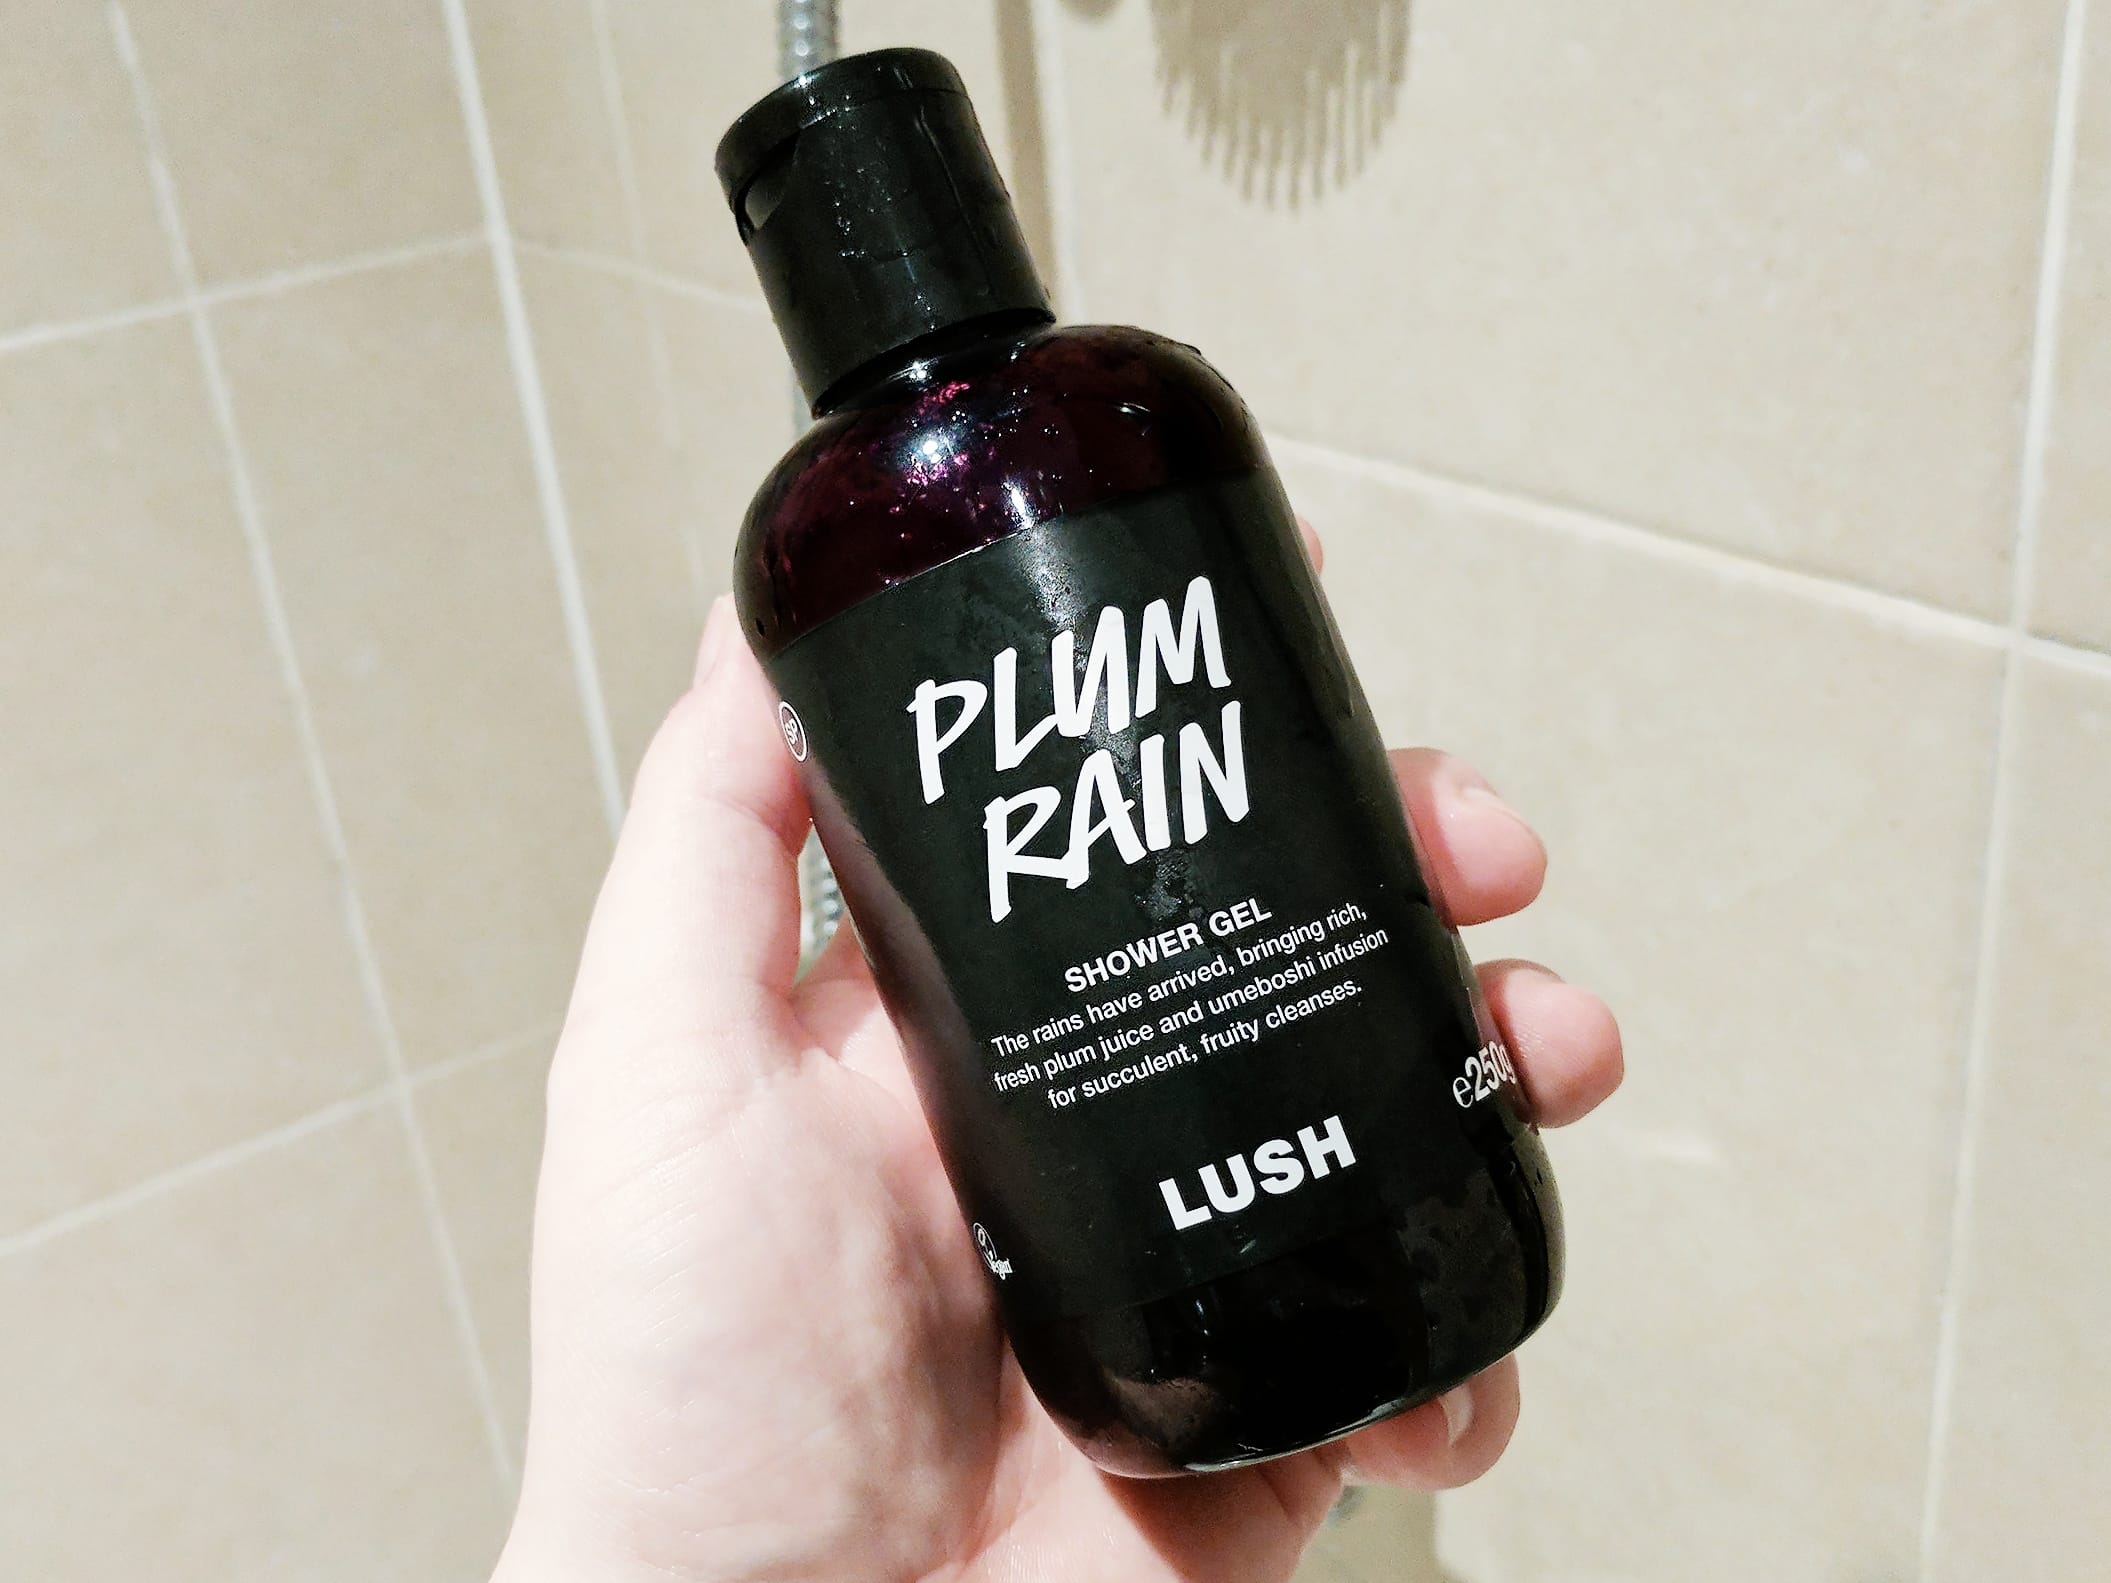 LUSH Ltd Plum Rain Shower Gel